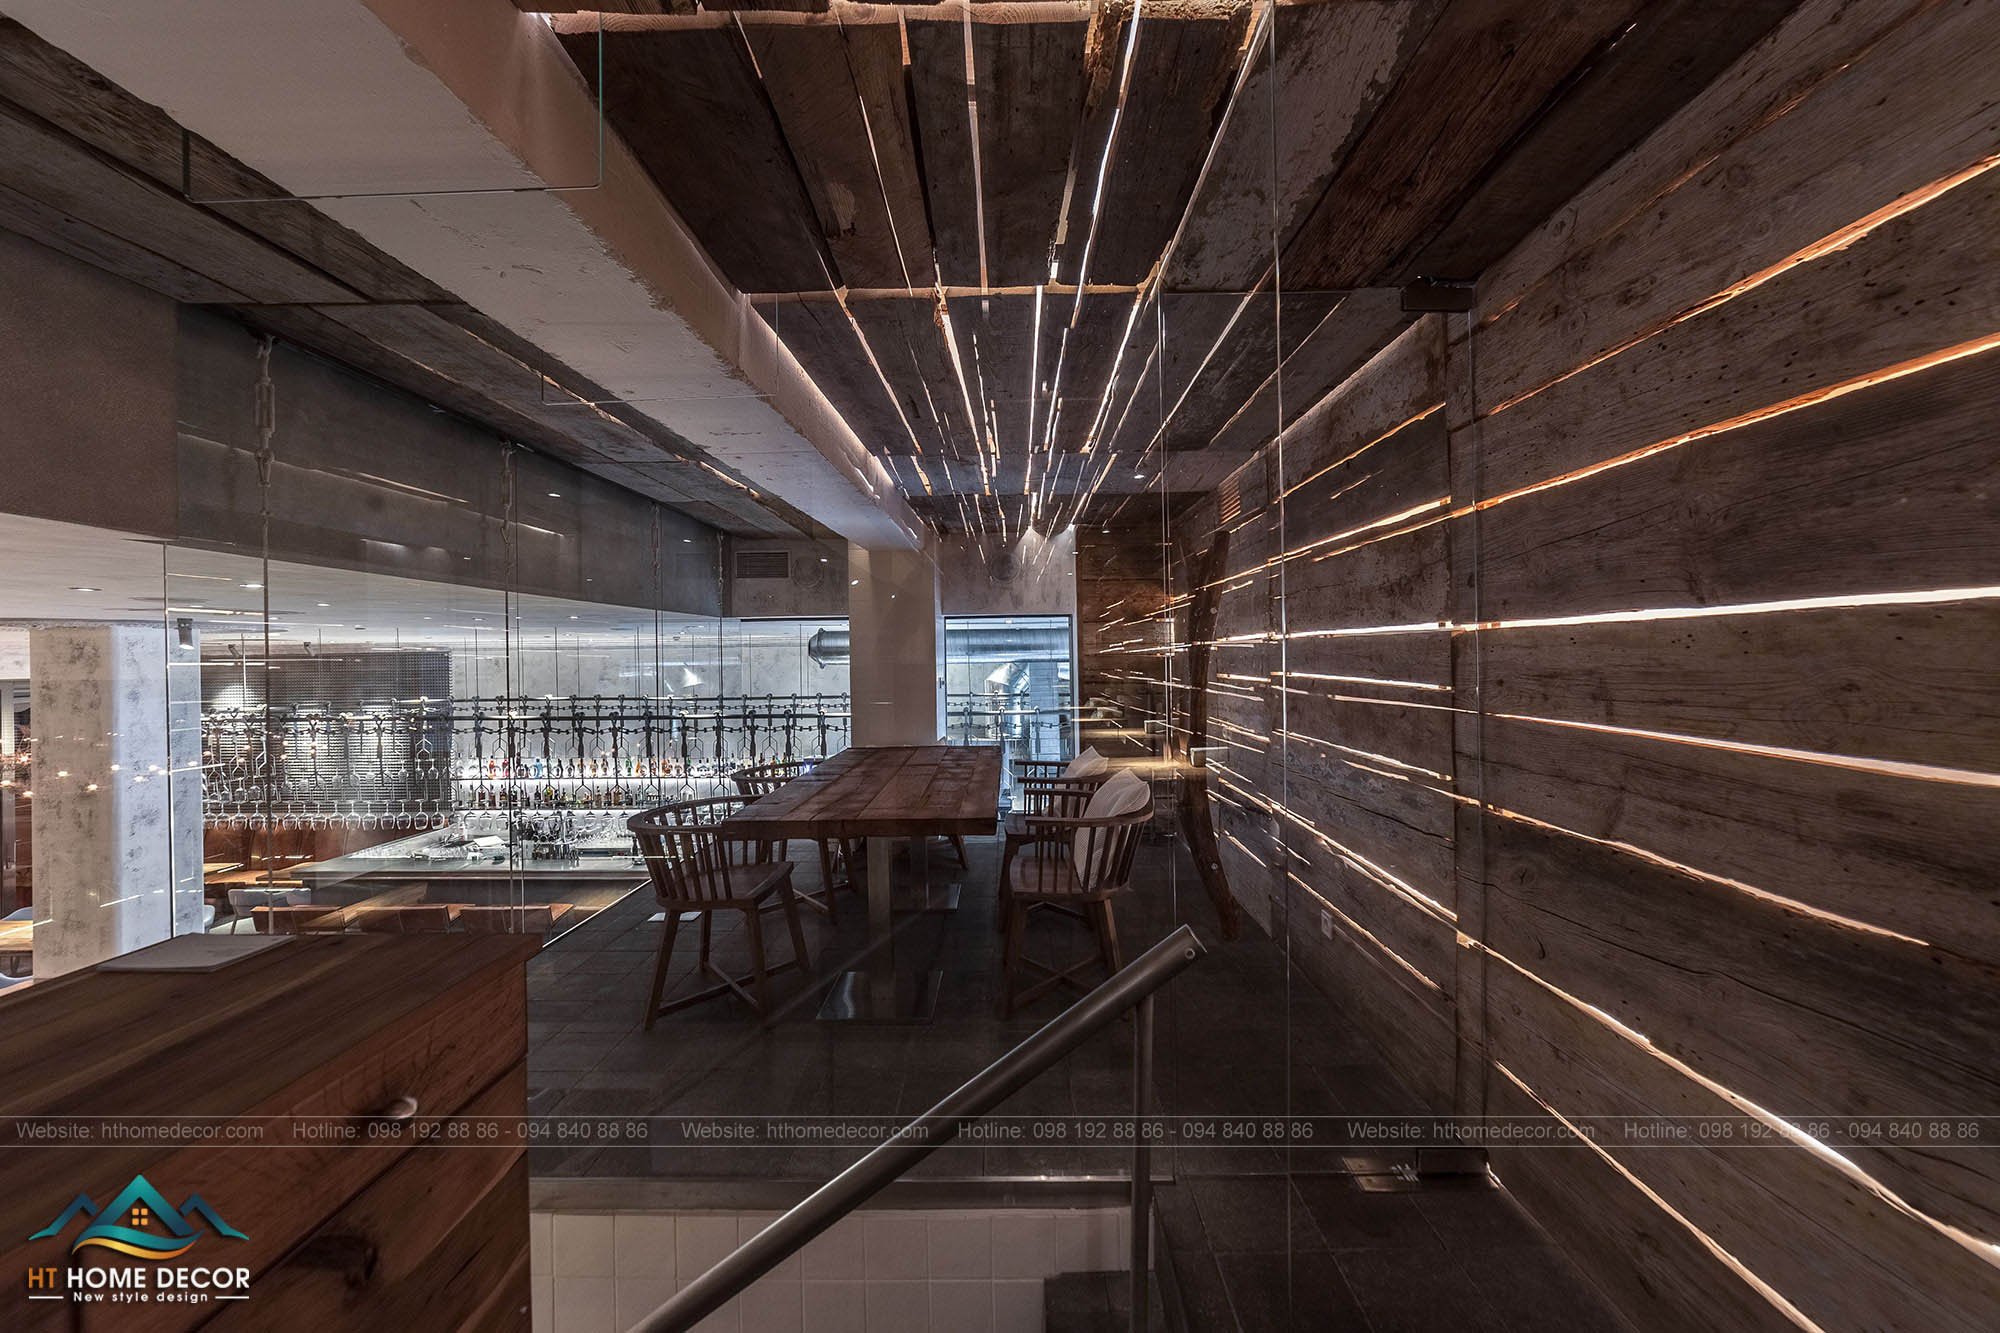 Hệ thống ánh đèn dài, từng mảnh gỗ dài được tận dụng để thiết kế nền tường của nhà hàng. Ấn tượng đúng không?